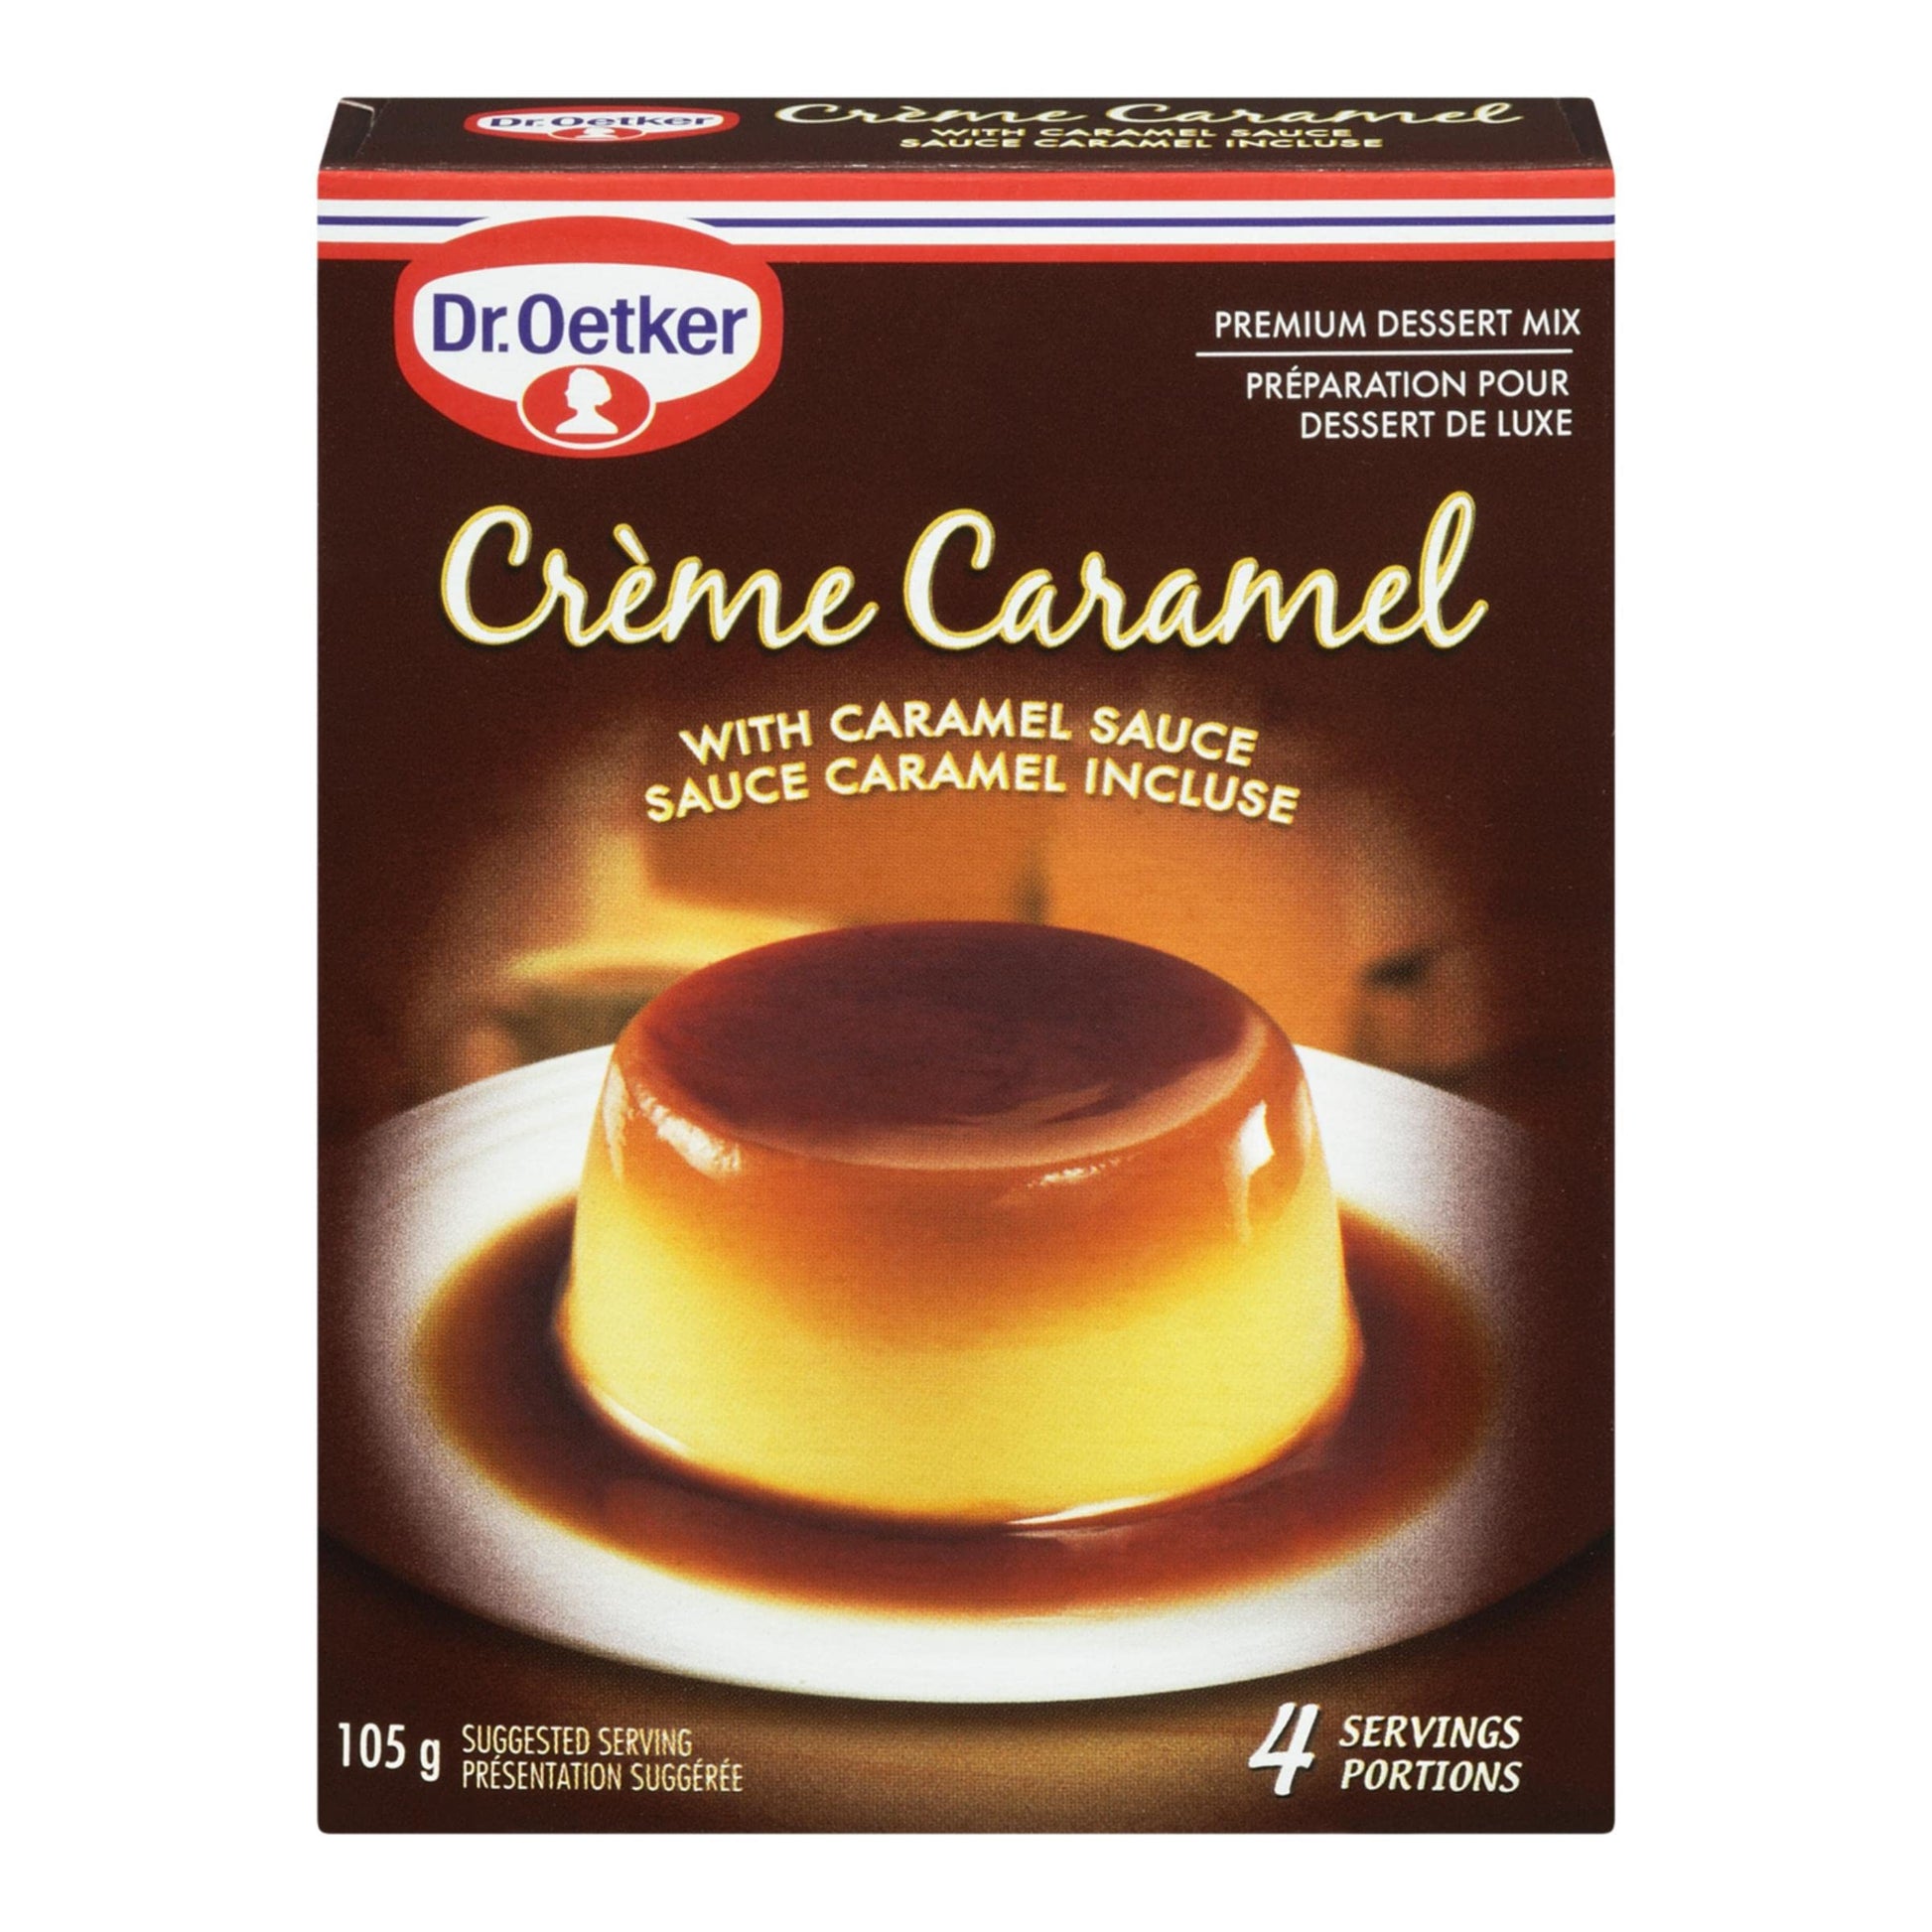 Dr. Oetker Creme Caramel Dessert Mix